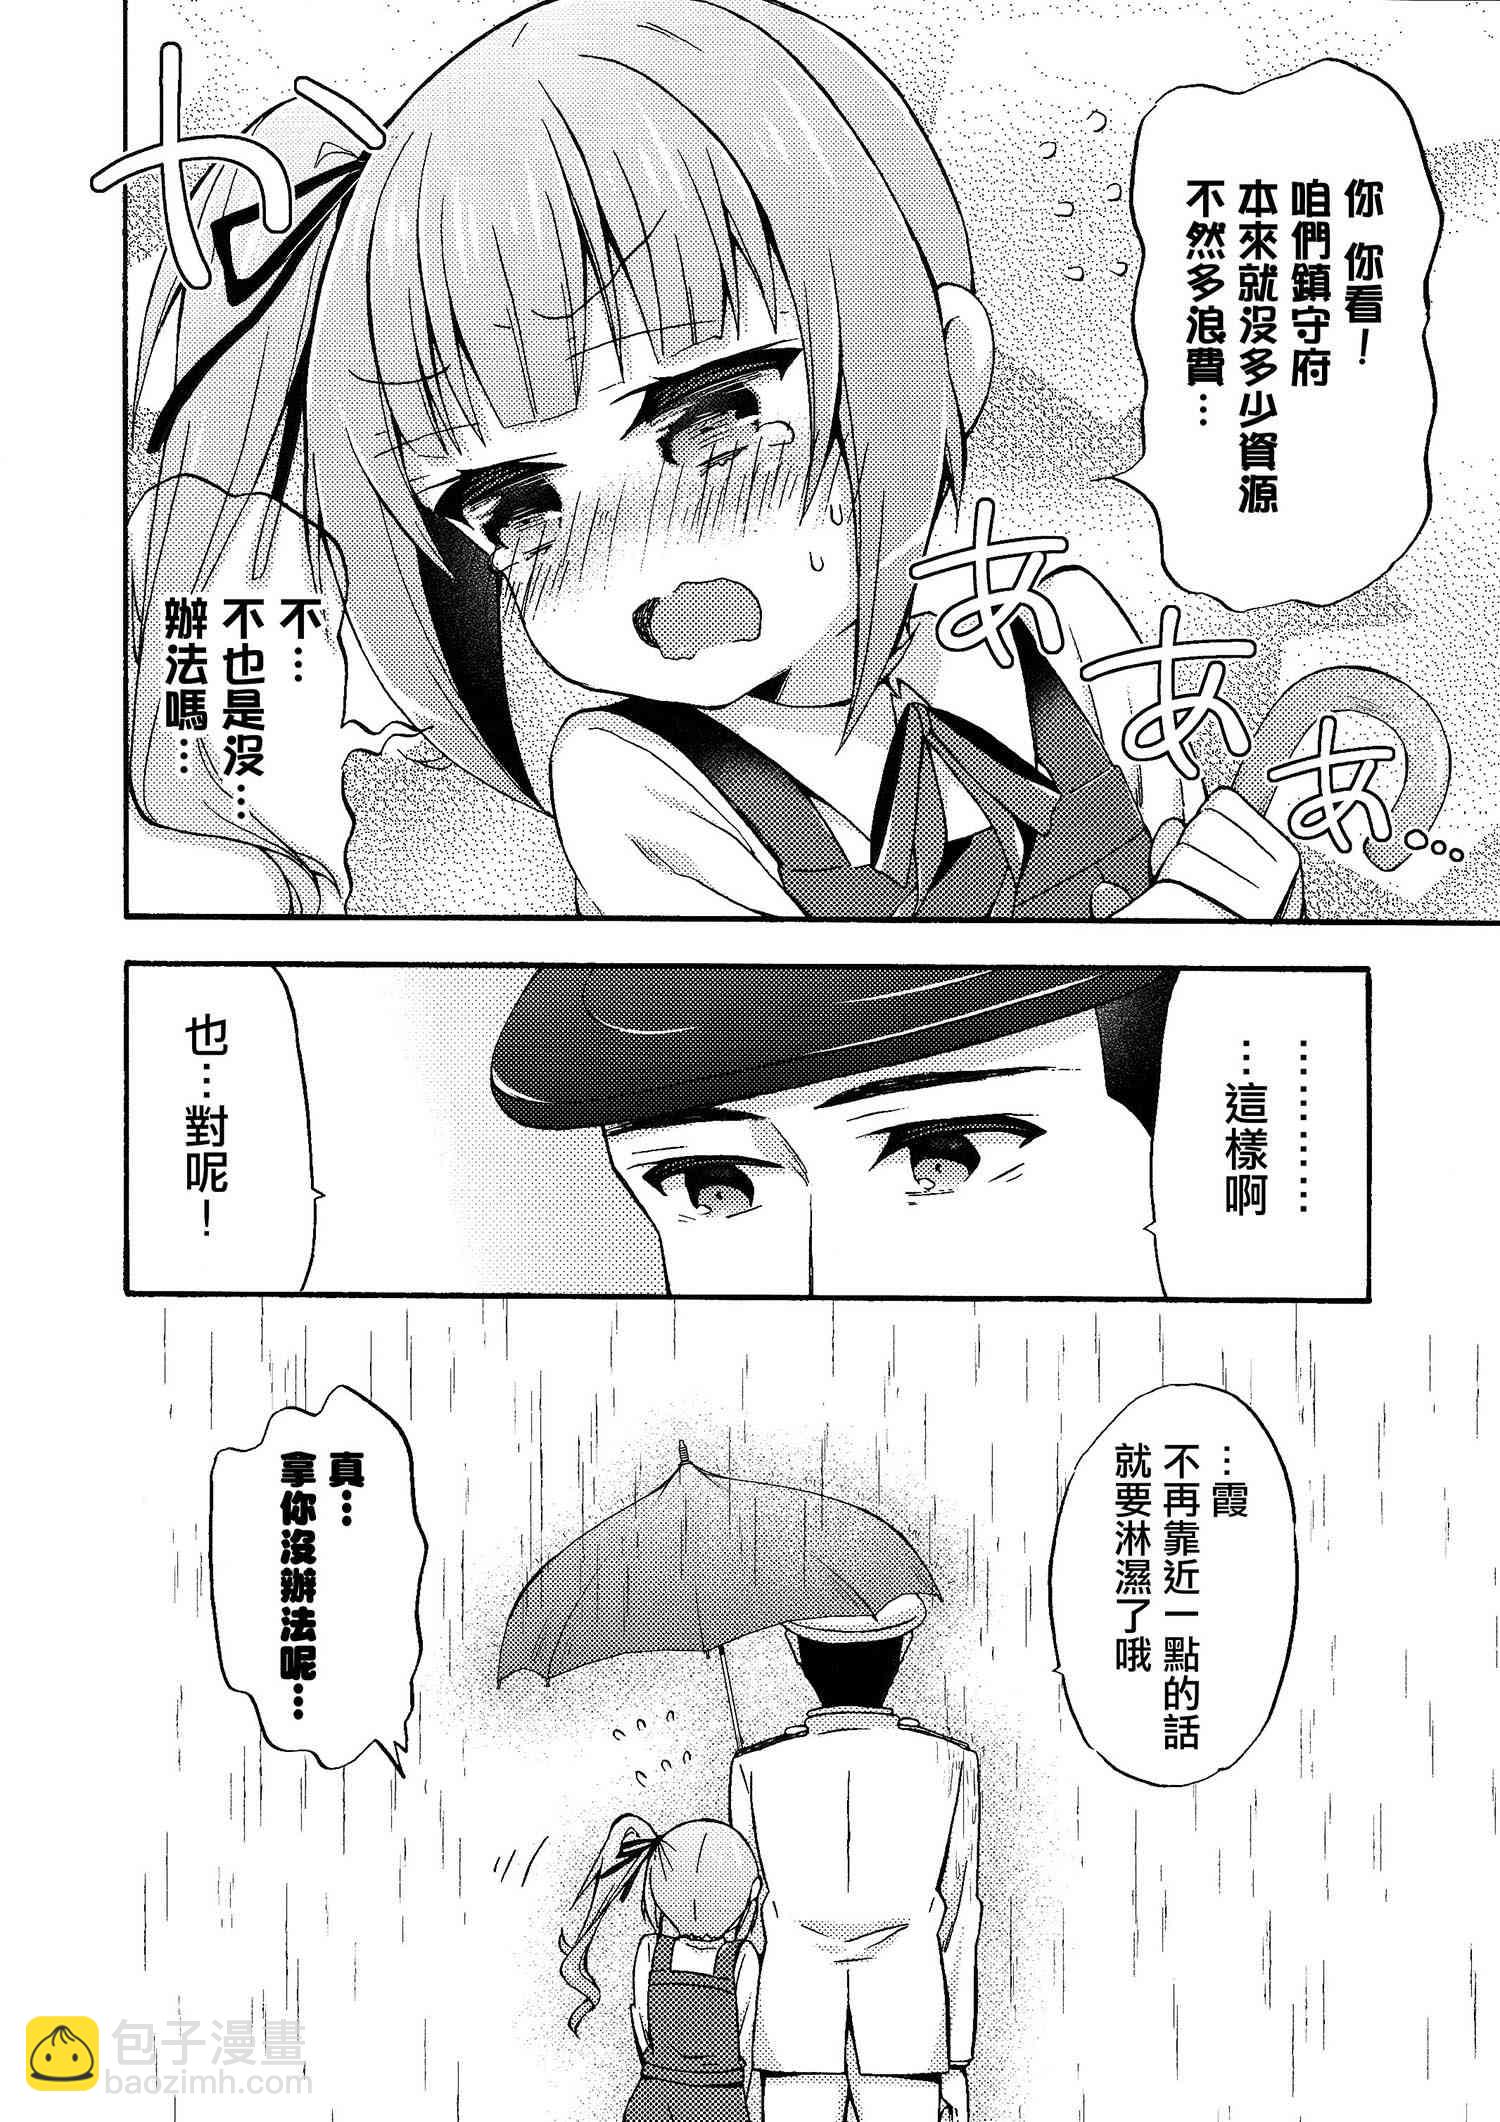 面舵的艦娘漫畫 - 霞與司令官03 - 3